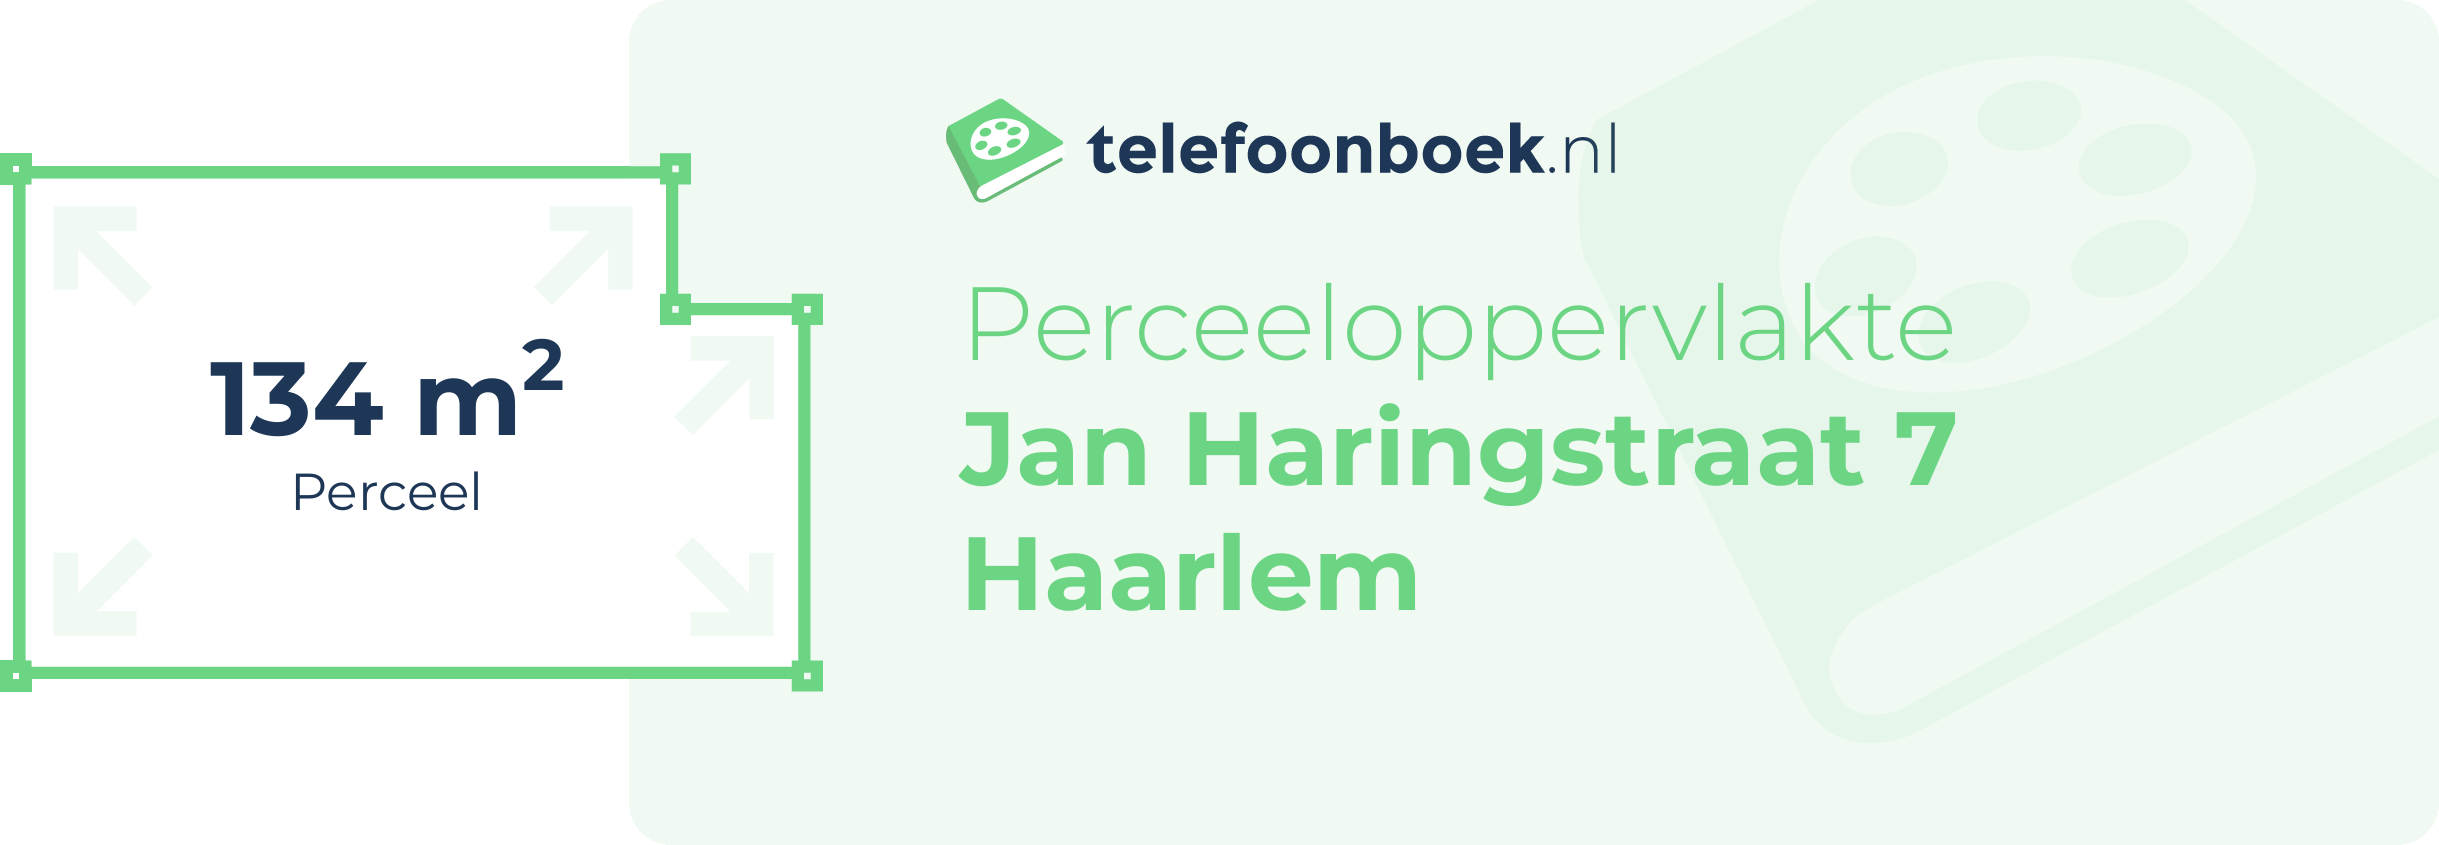 Perceeloppervlakte Jan Haringstraat 7 Haarlem